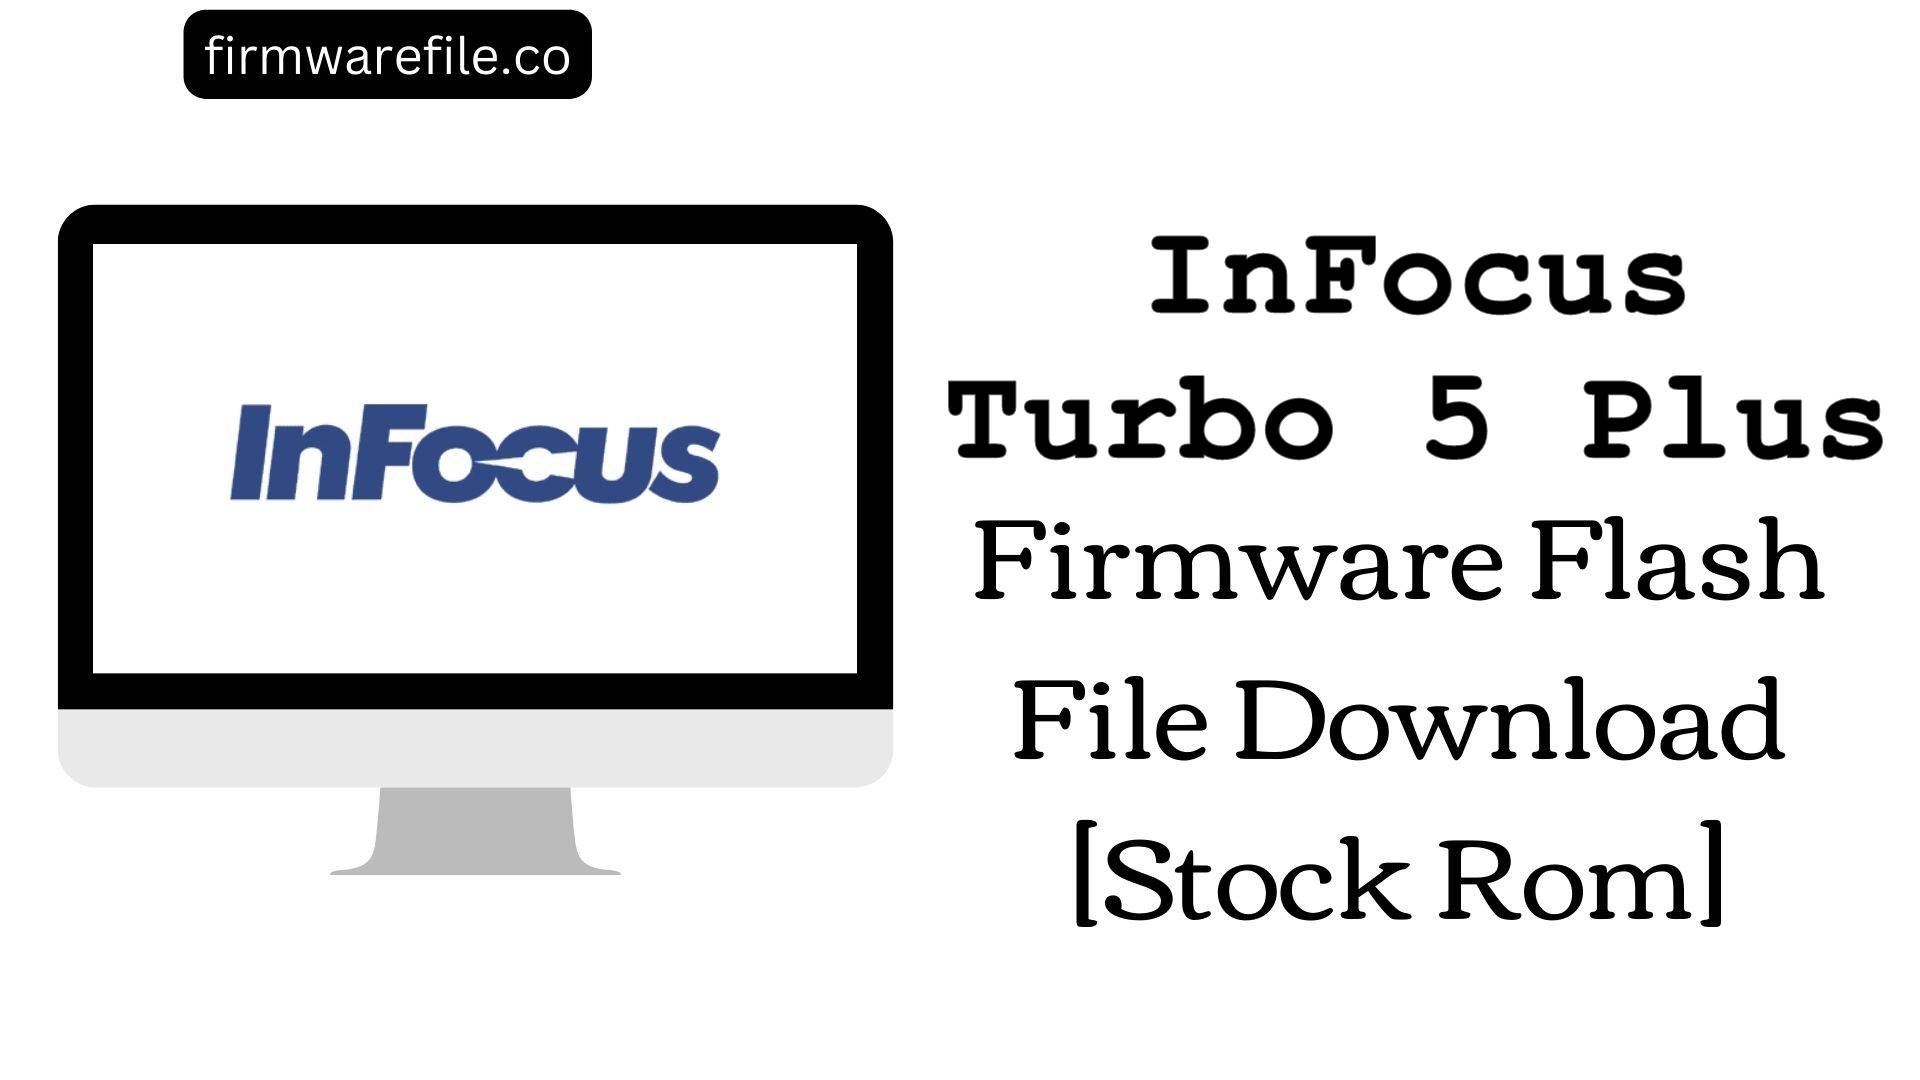 InFocus Turbo 5 Plus